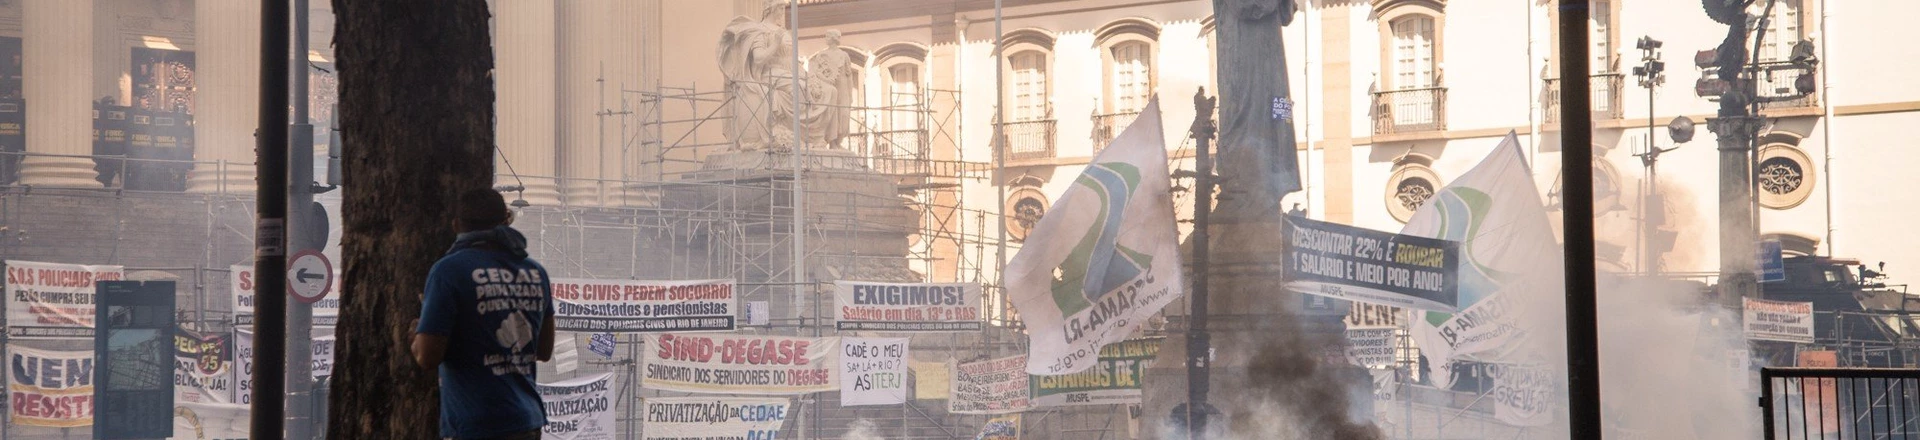 Cedae: o caro boi de piranha da crise econômica no Rio de Janeiro